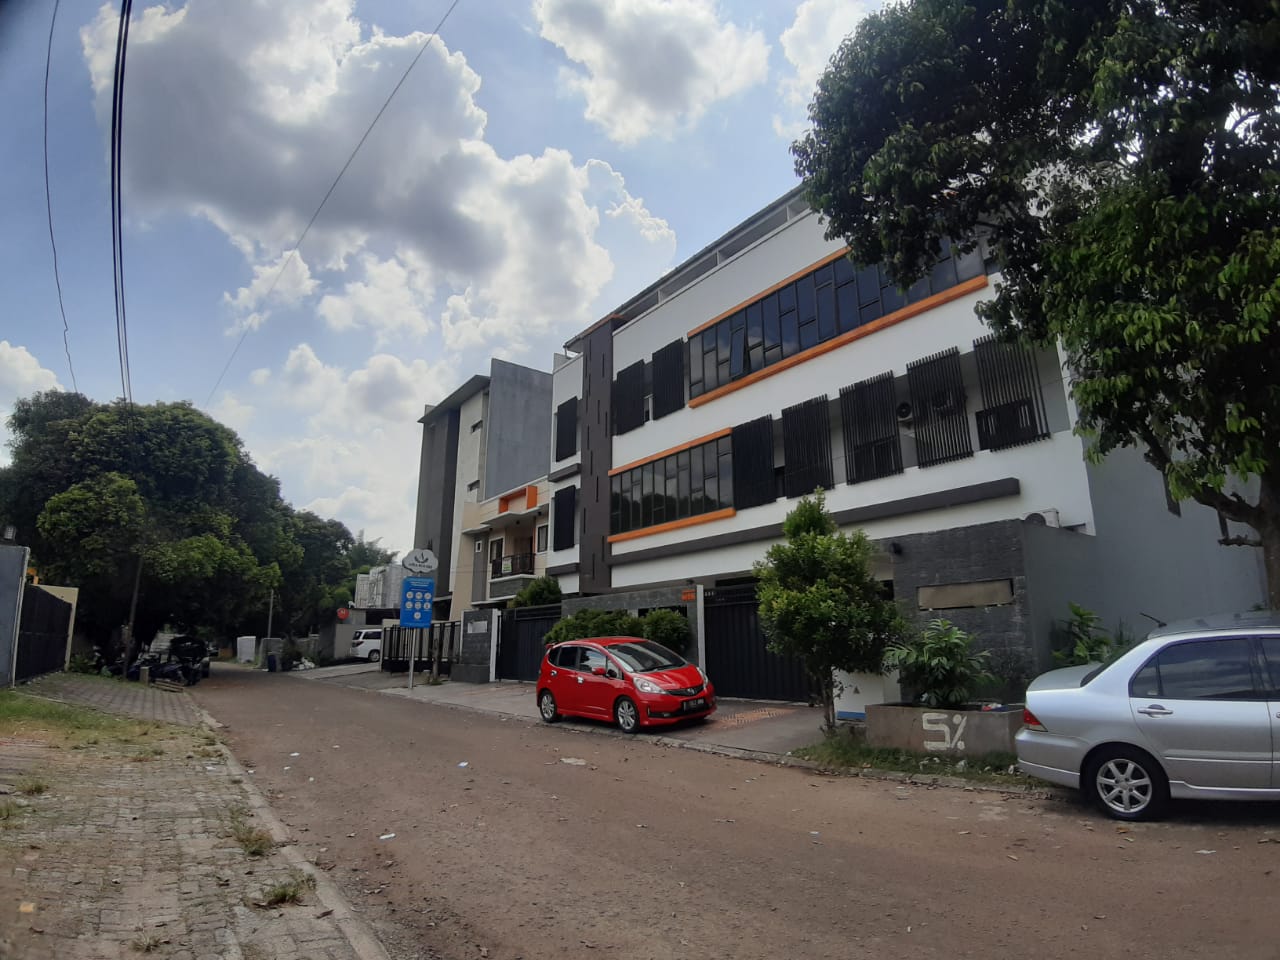 Tempat penginapan harian yang berlokasi di kawasan perumahan mewah Anggrek Loka, Serpong, Tangerang Selatan, Senin (22/3/2021).